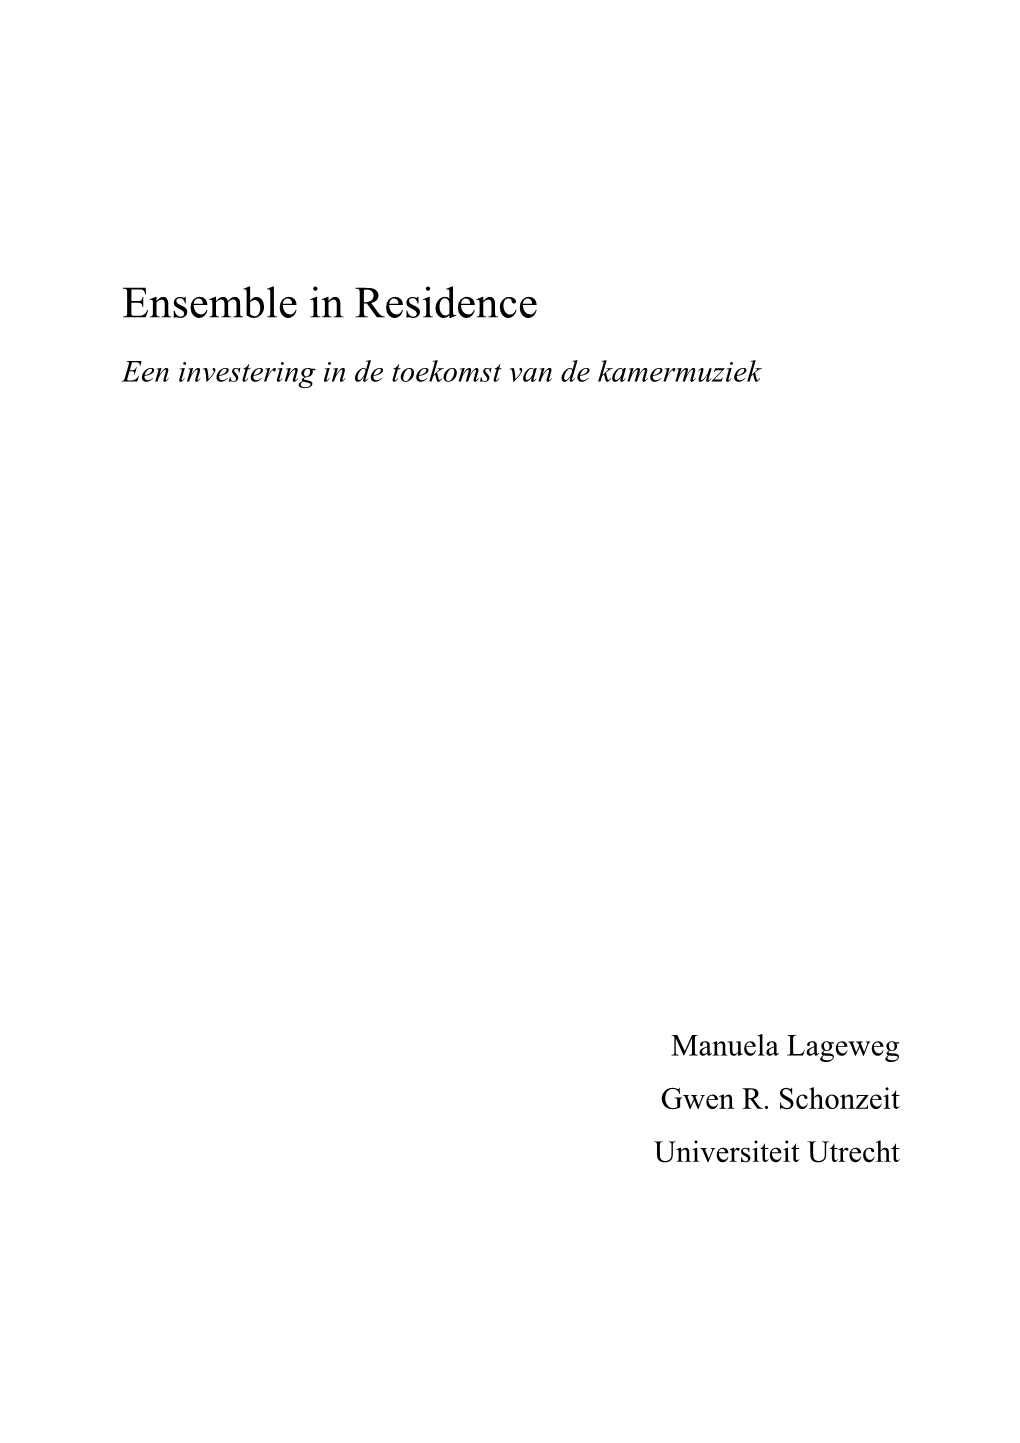 Ensemble in Residence Een Investering in De Toekomst Van De Kamermuziek